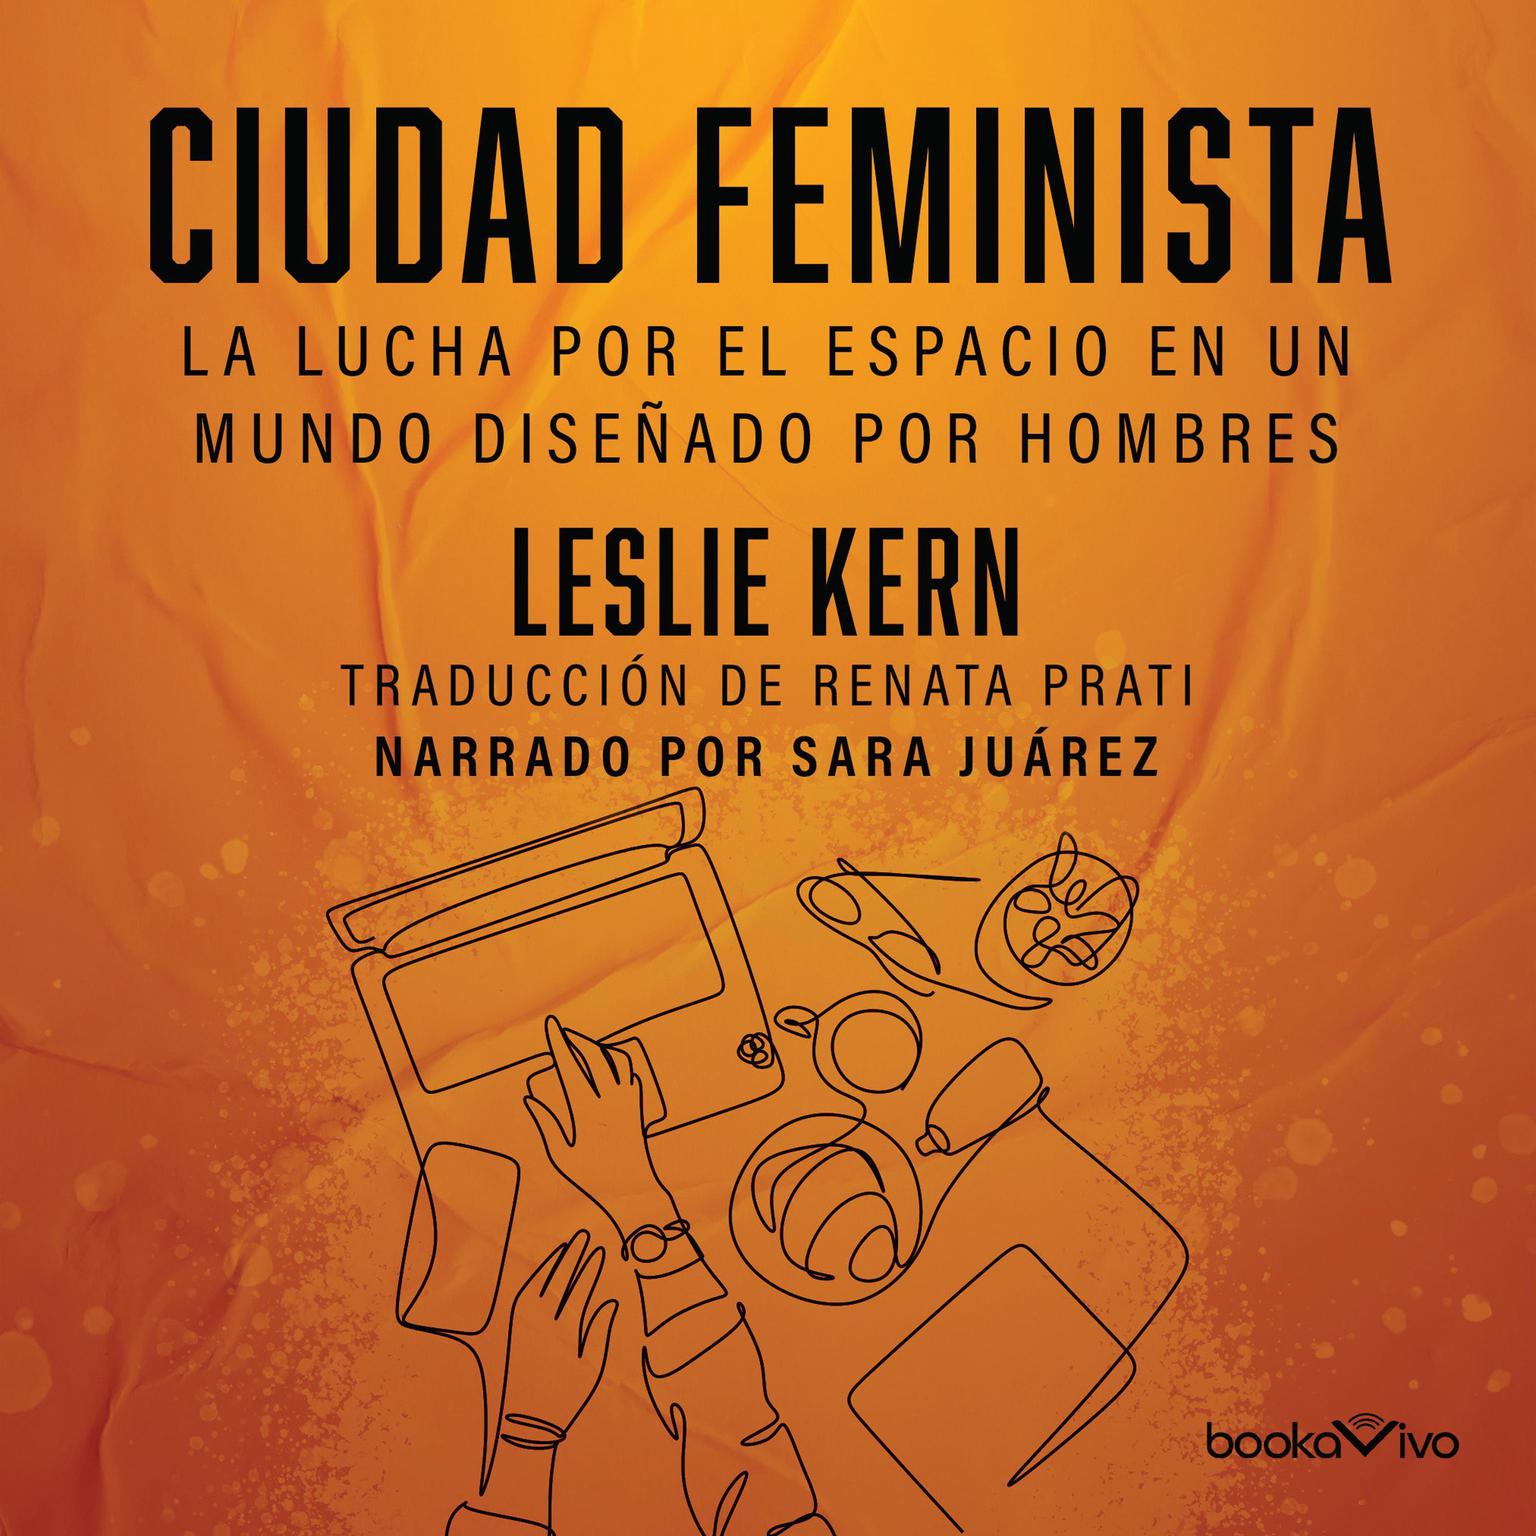 Ciudad feminista: La lucha por el espacio en un mundo diseñado por hombres (Feminist City: Claiming Space in a Man-Made World) Audiobook, by Leslie Kern